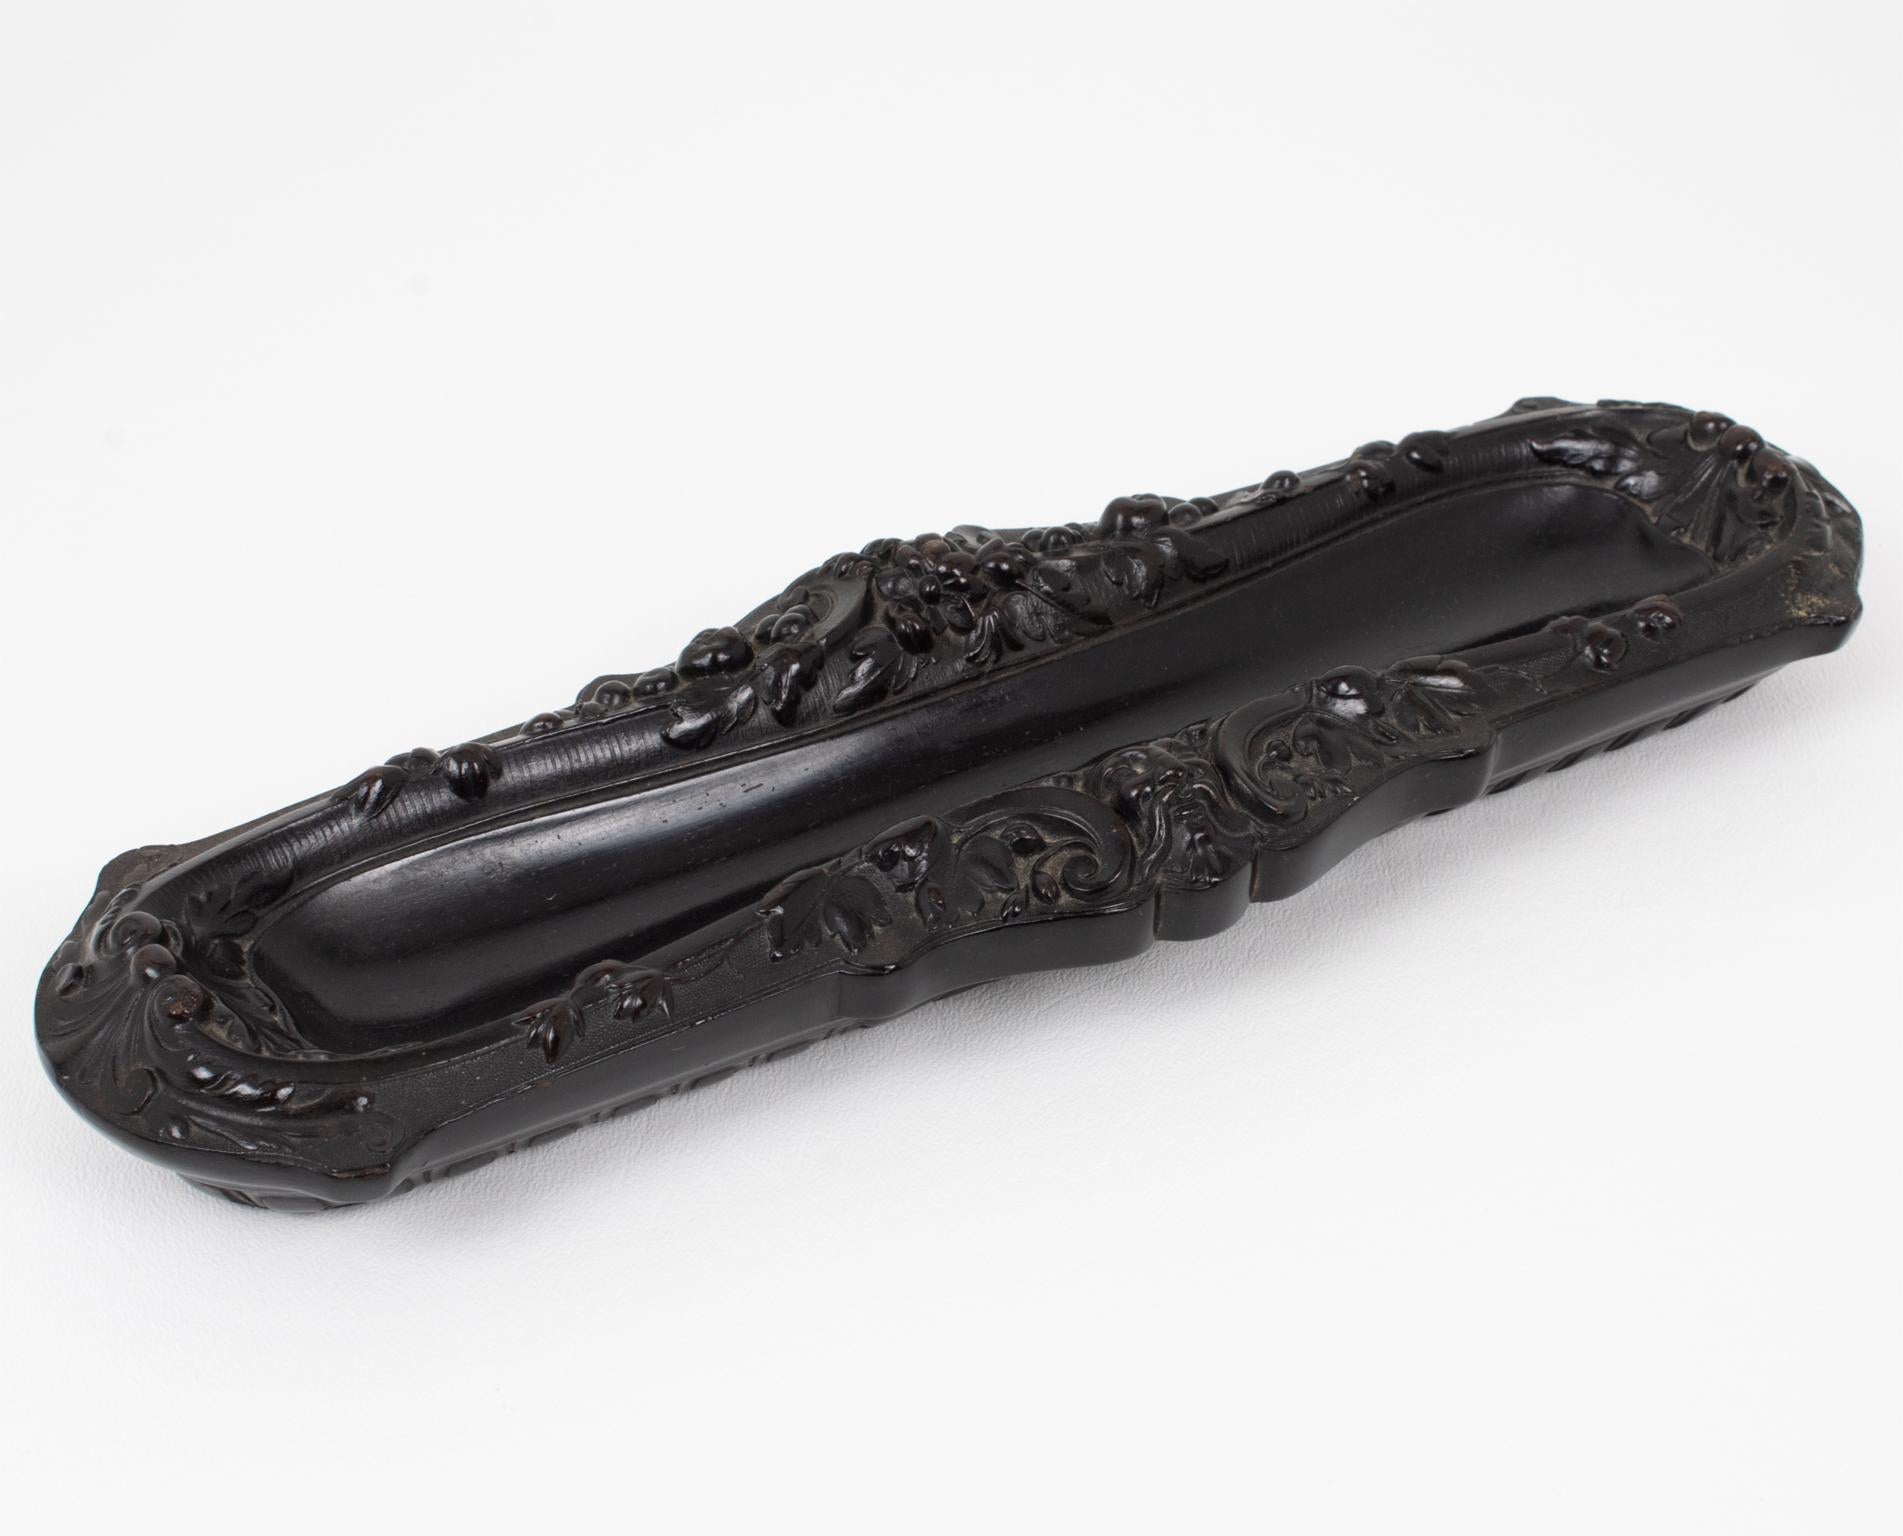 Dieser prächtige Napoleon-III-Stifthalter aus Guttapercha wurde in den 1880er Jahren in Frankreich handgefertigt. Das antike Schreibtisch-Accessoire ist mit verschiedenen geformten Motiven auf jeder Seite und zarten Verzierungen auf der gesamten